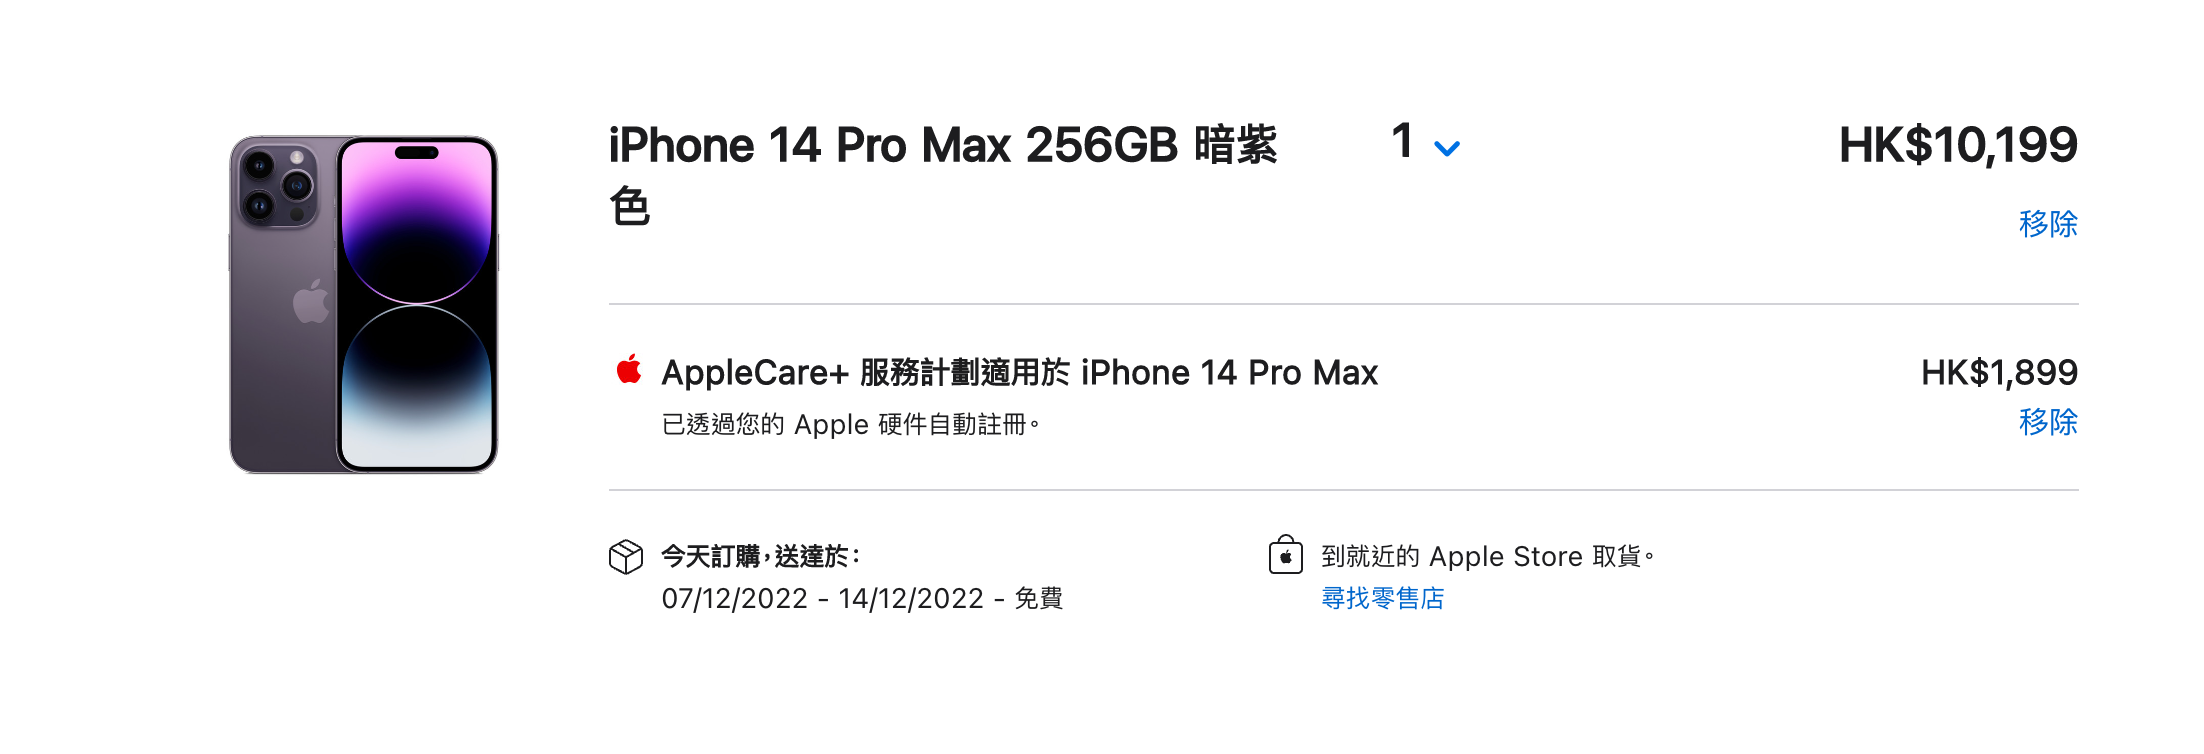 蘋果14 Pro收貨等更長時間 香港蘋果店要等1個月